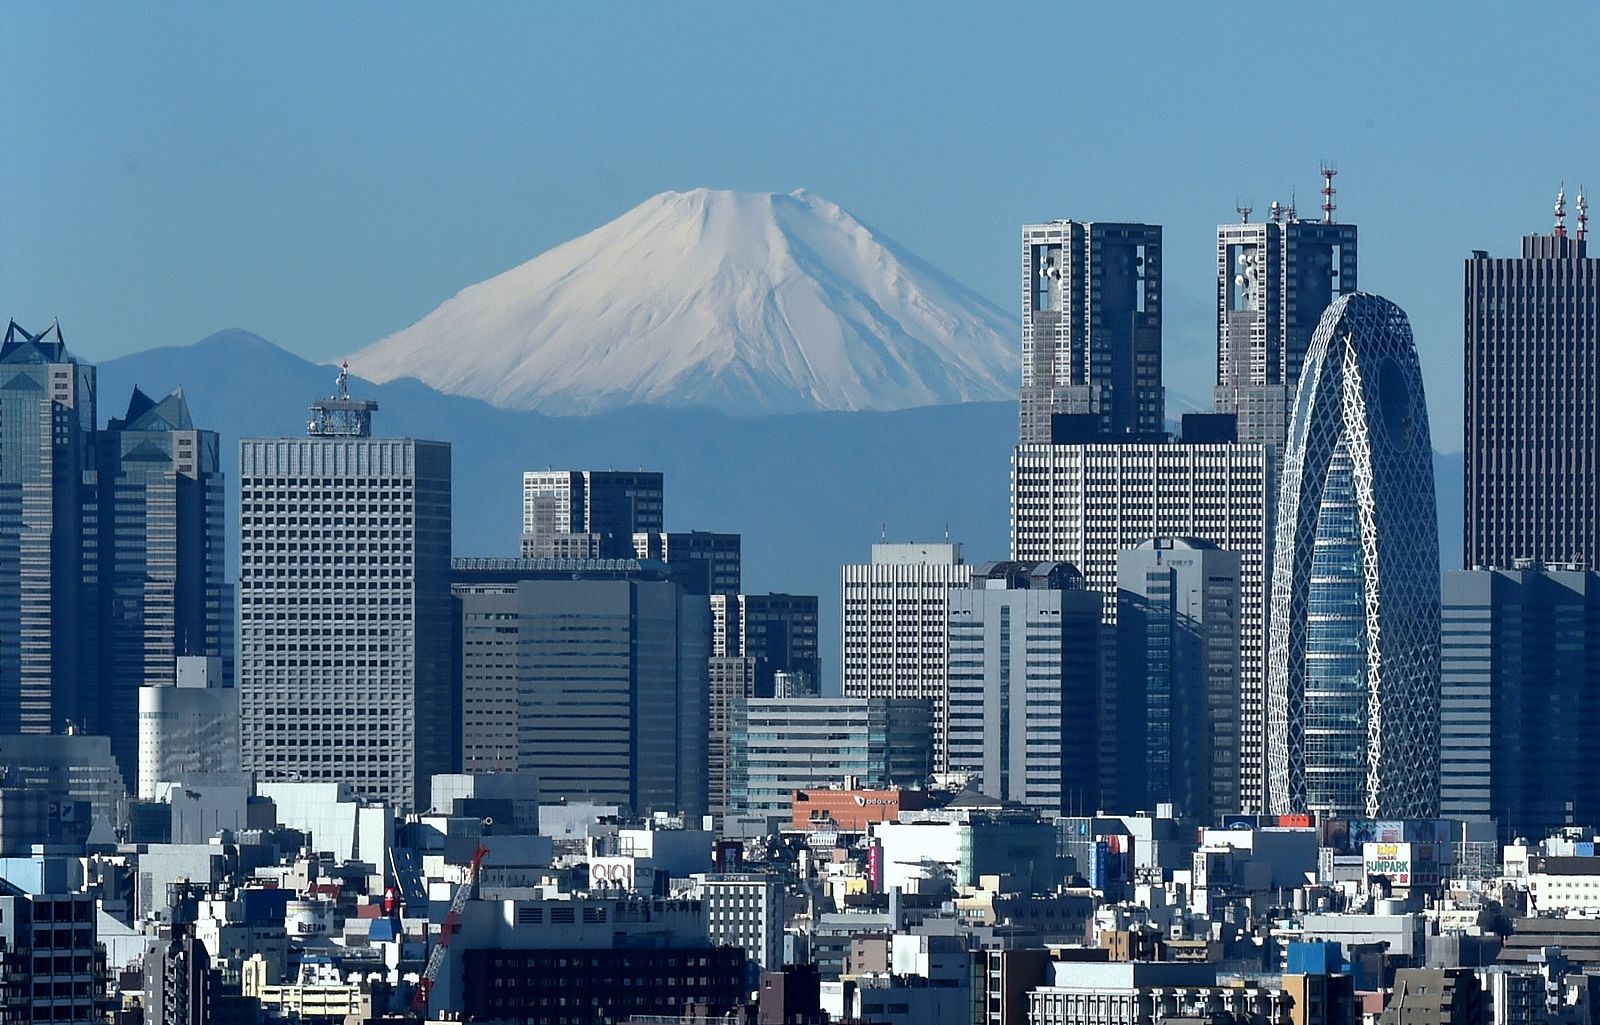 Vista del distrito financiero de Tokio con el monte Fuji, la montaña más alta del país, al fondo.